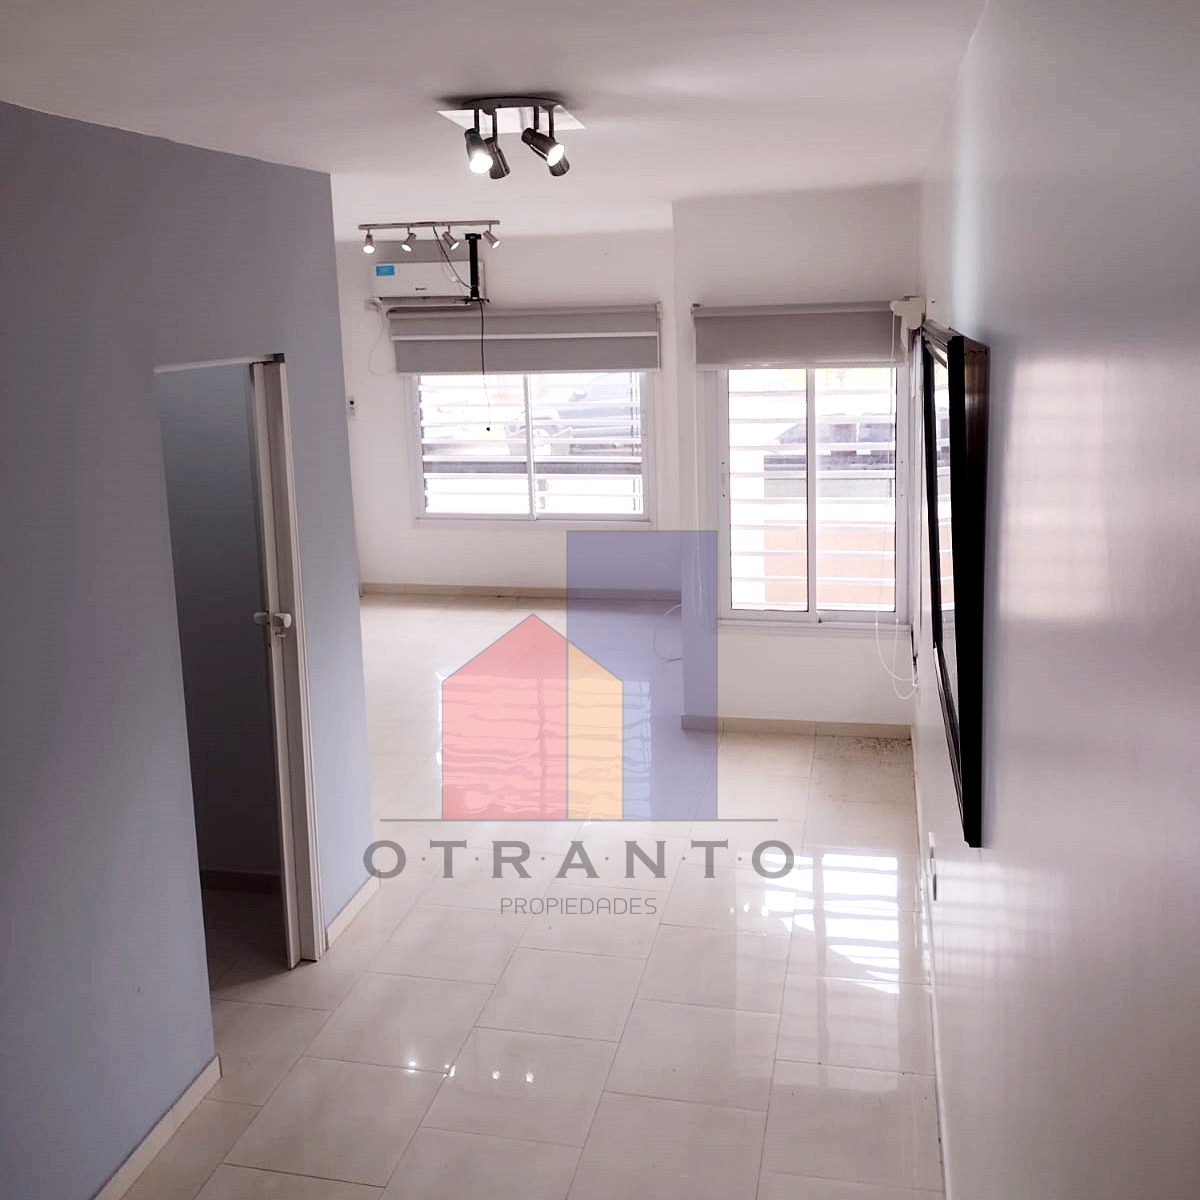 #3692160 | Sale | Apartment | Villa Luzuriaga (Otranto Propiedades )